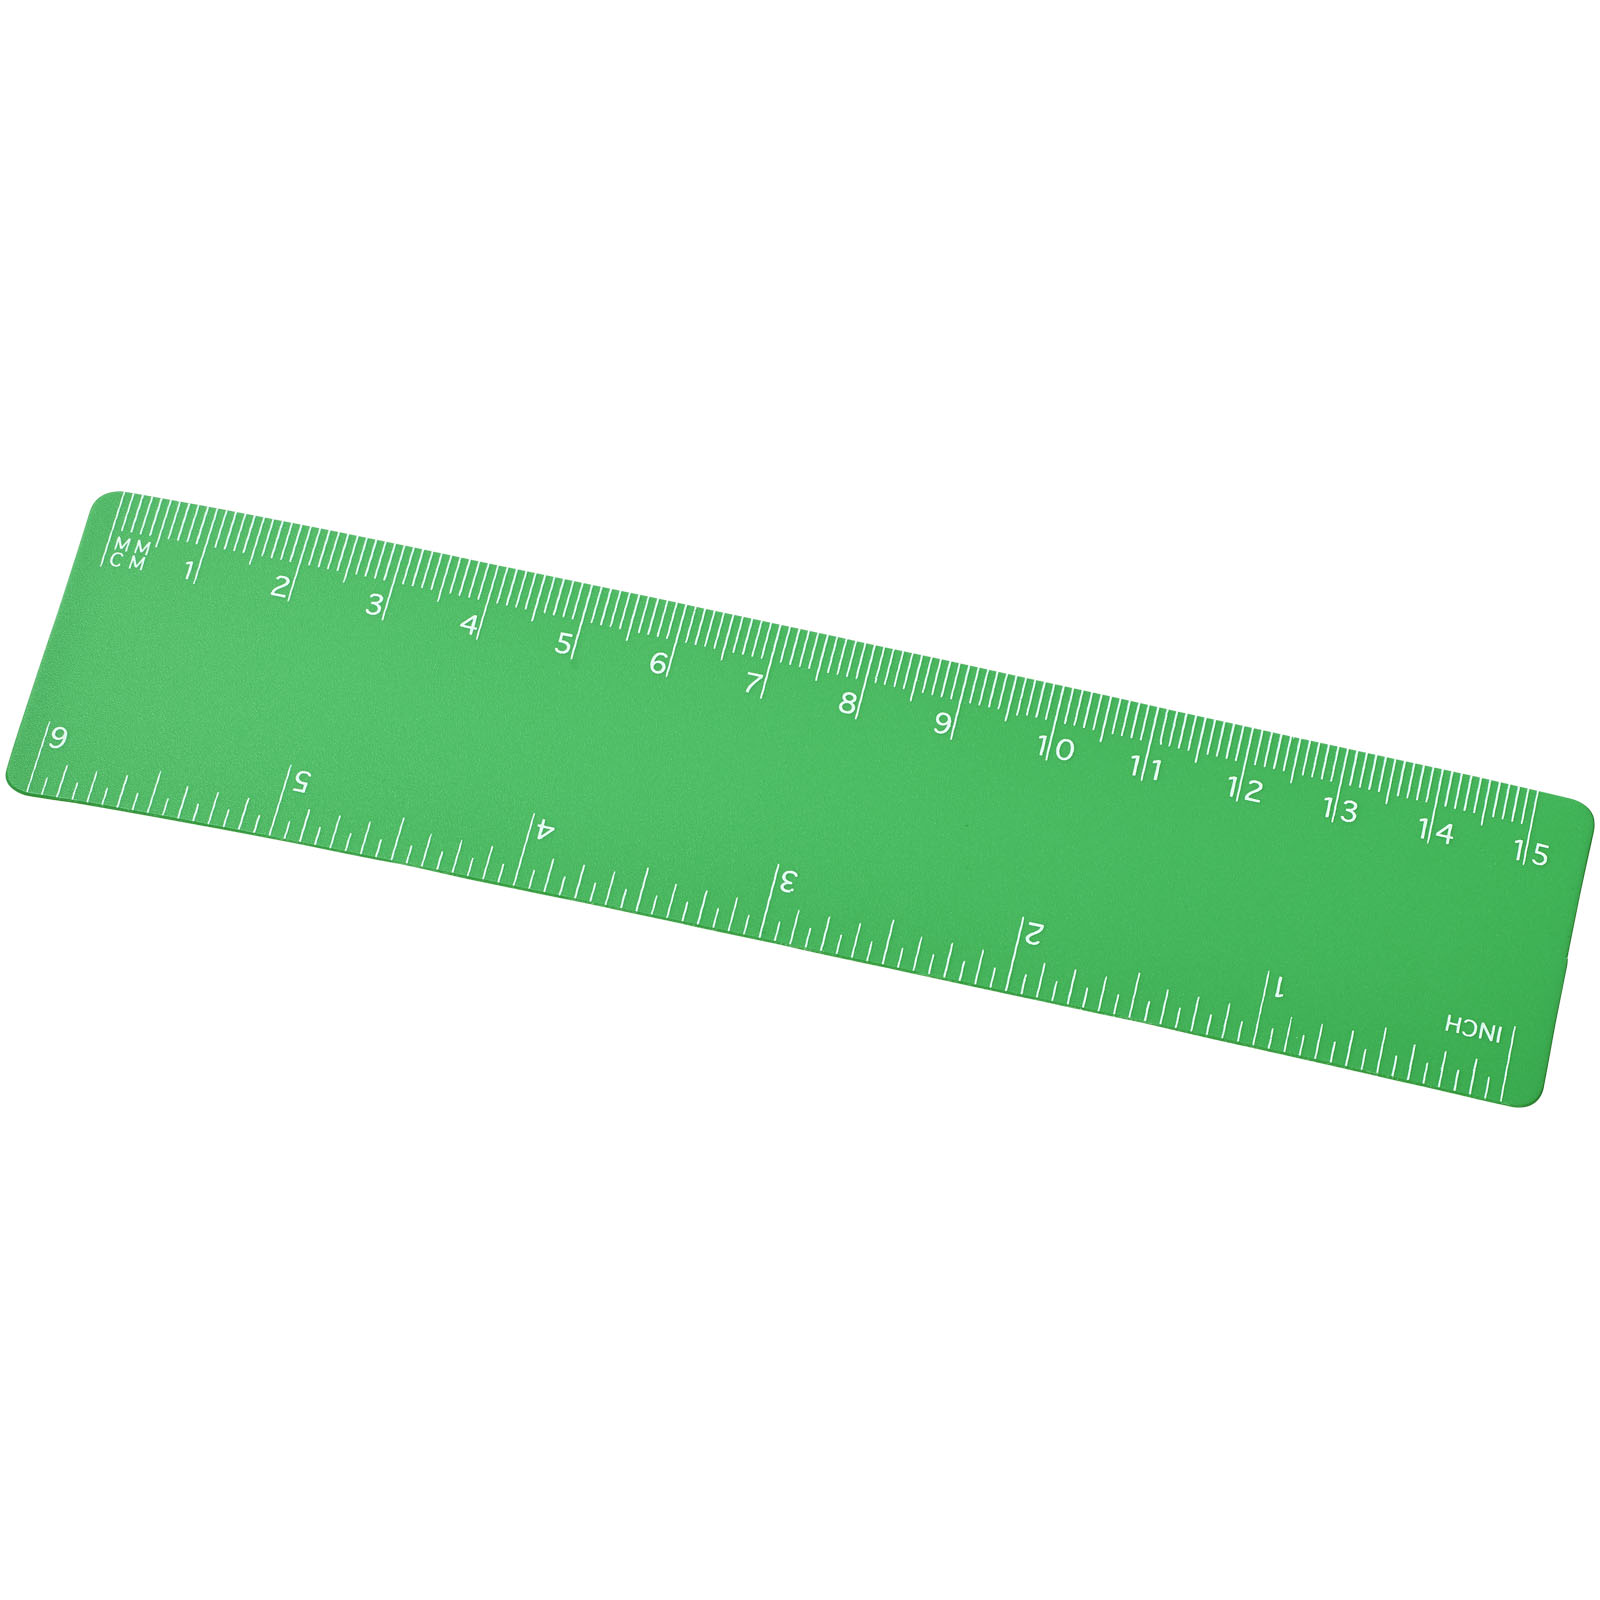 Notebooks & Desk Essentials - Rothko 15 cm plastic ruler